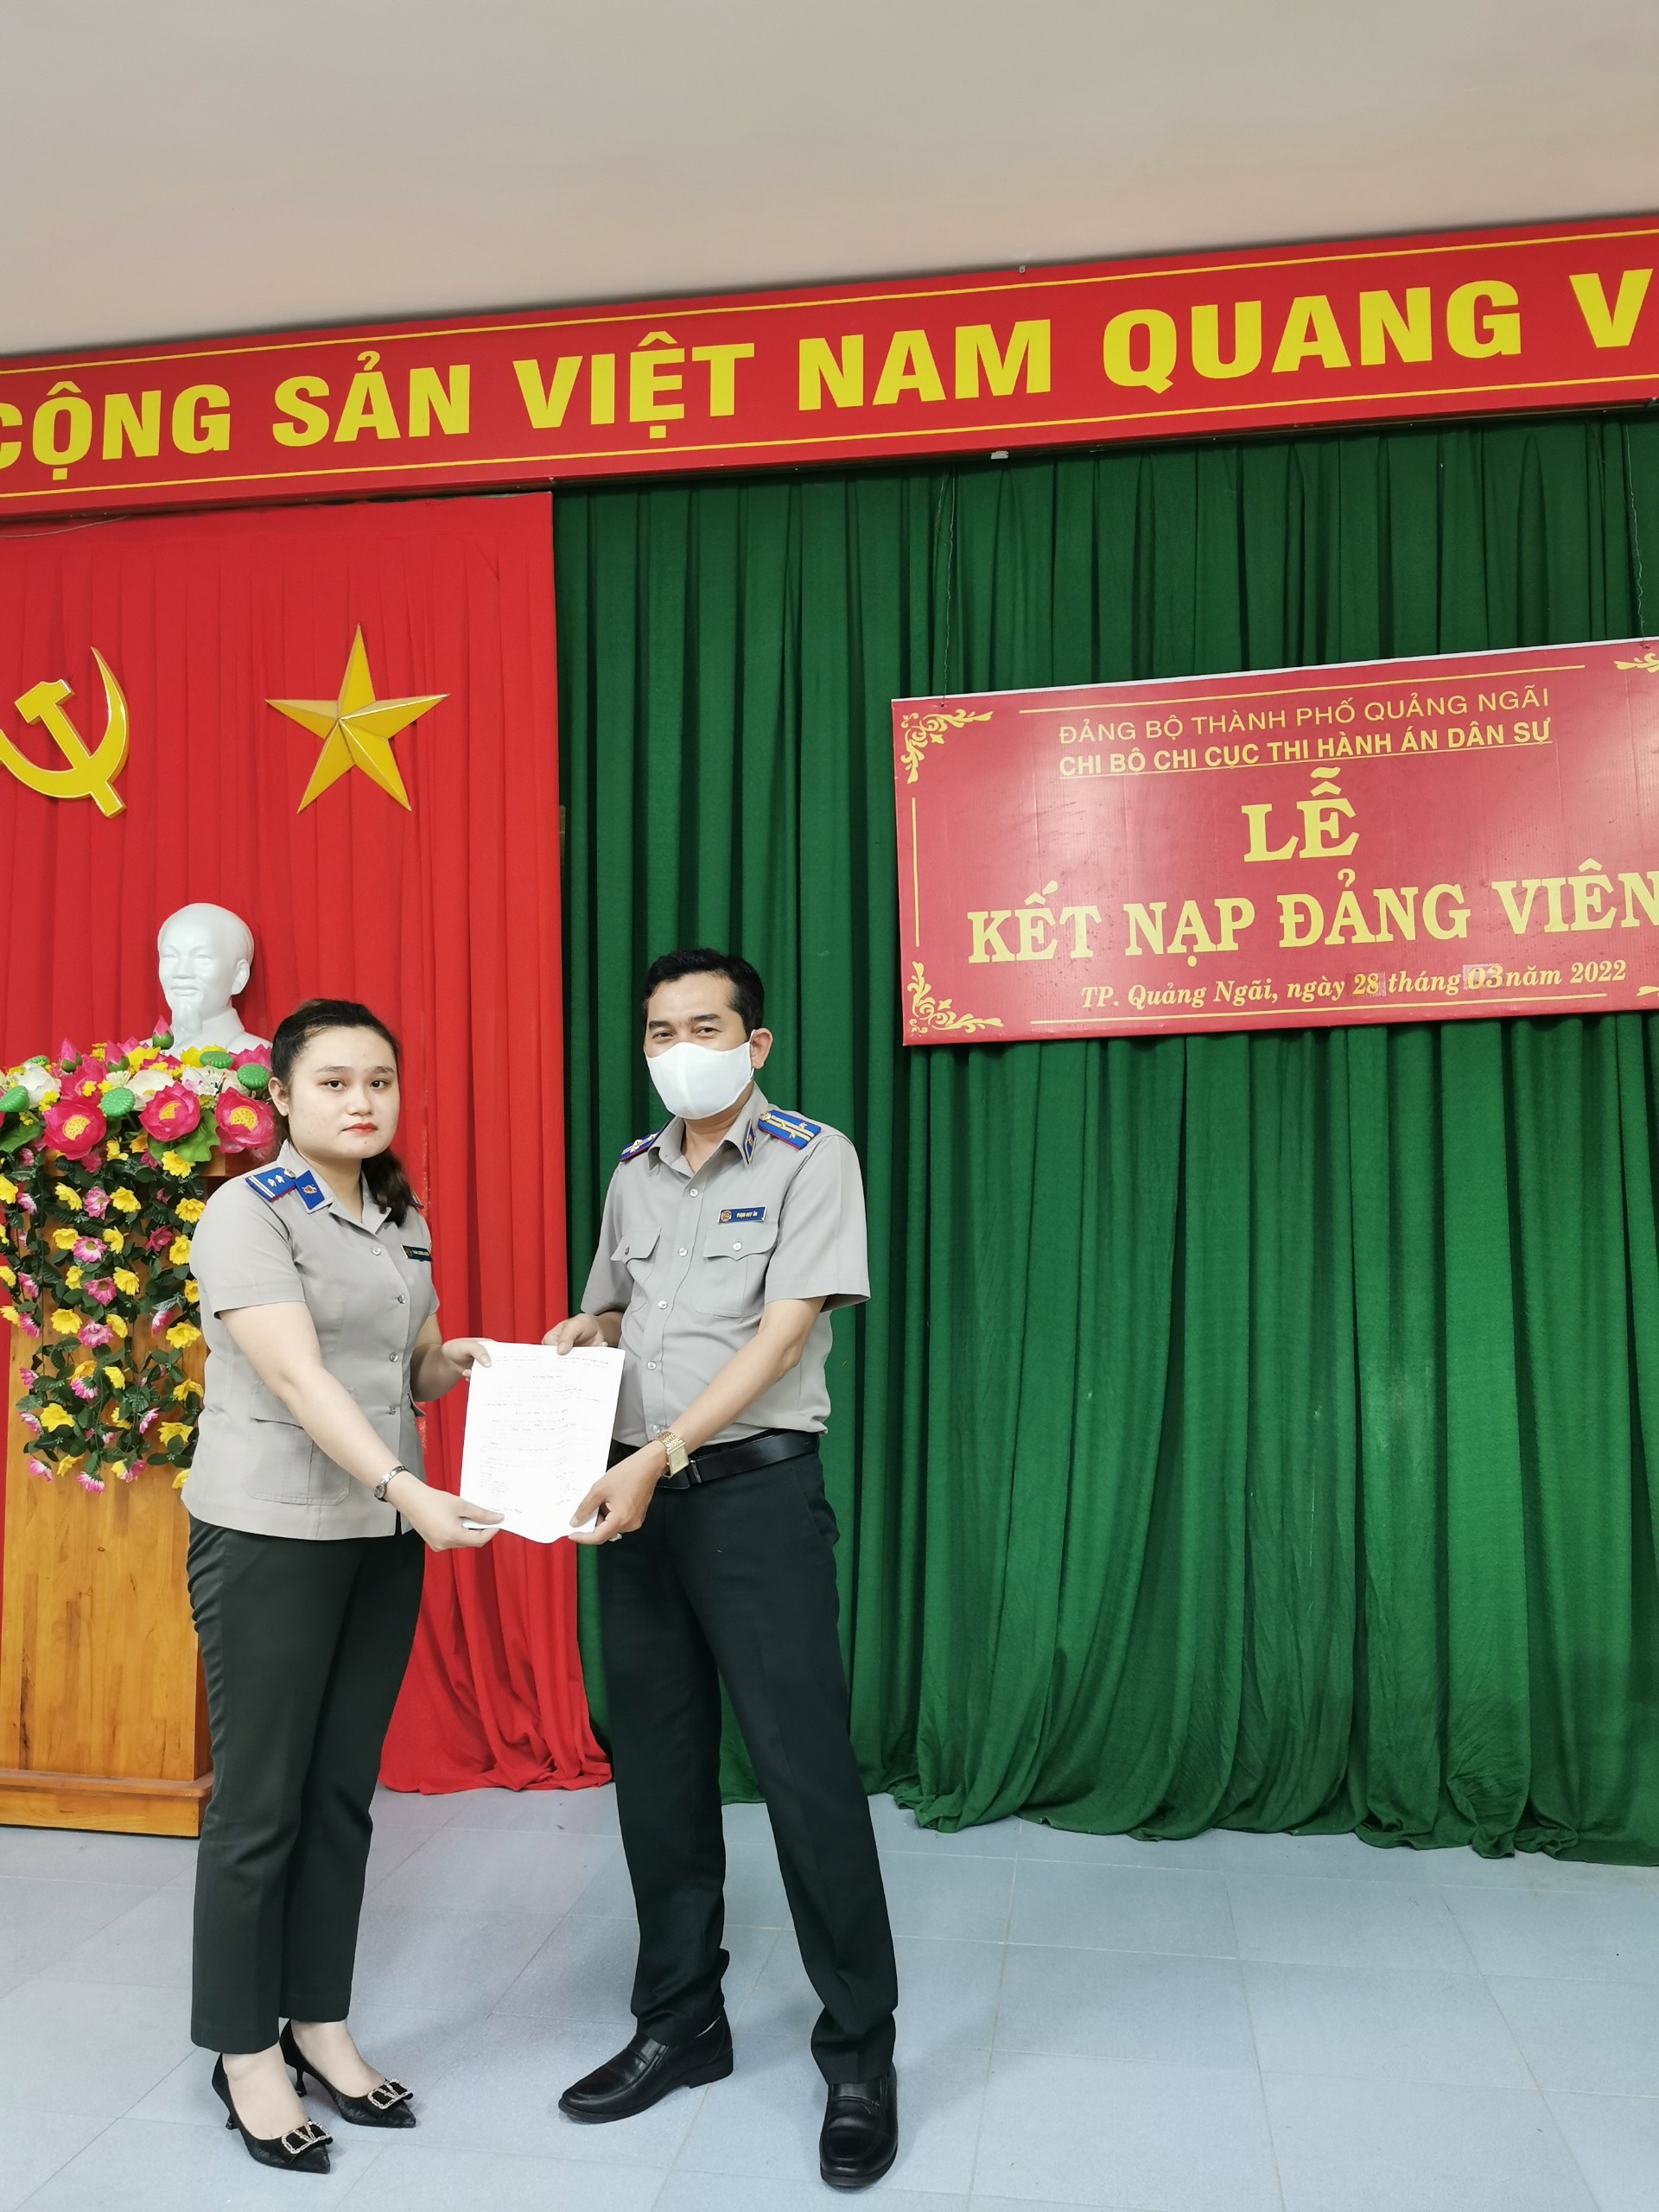 Chi bộ Chi cục Thi hành án dân sự thành phố Quảng Ngãi tổ chức lễ kết nạp đảng viên mới